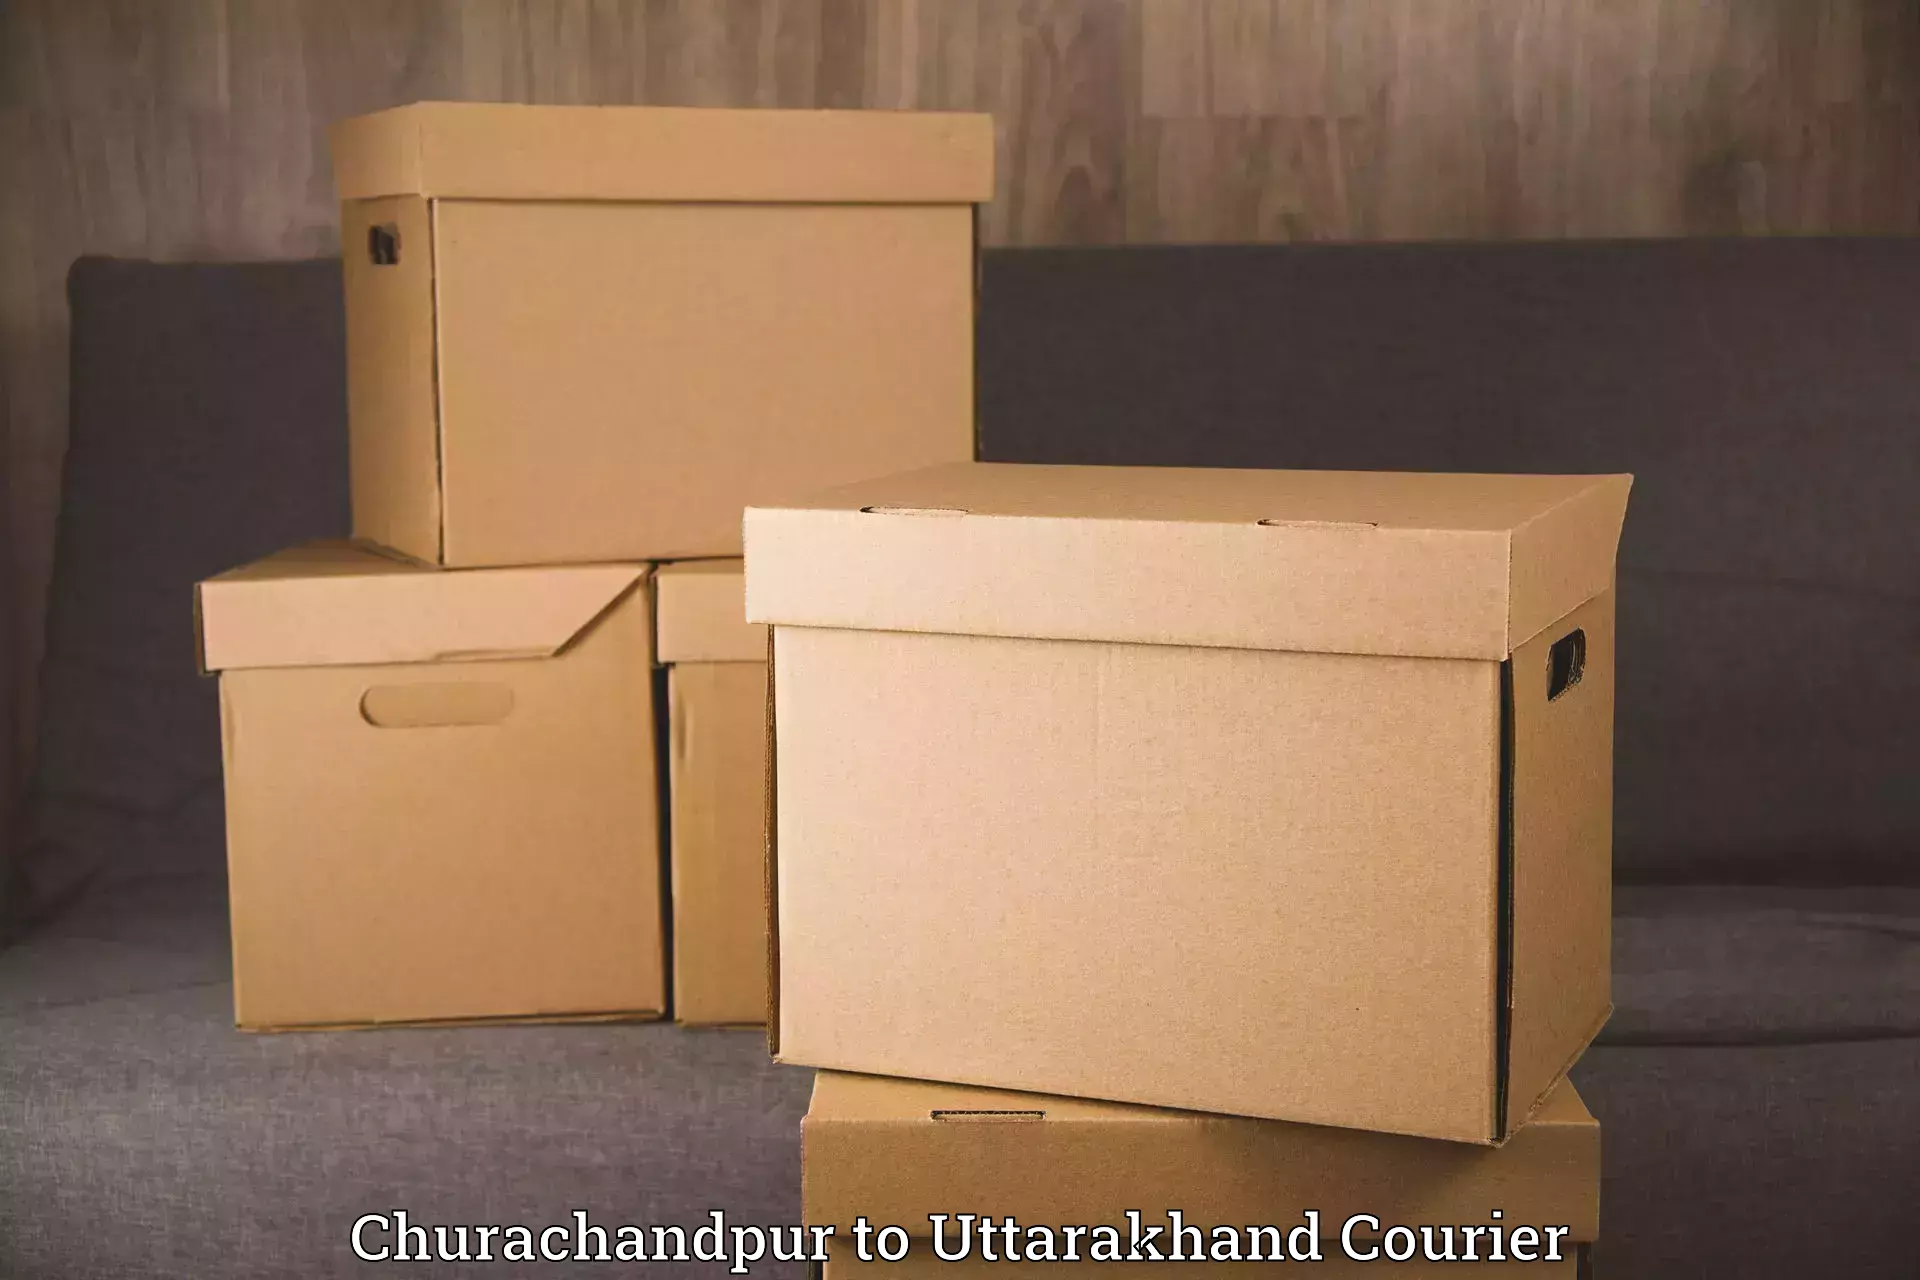 Furniture transport service Churachandpur to Gumkhal